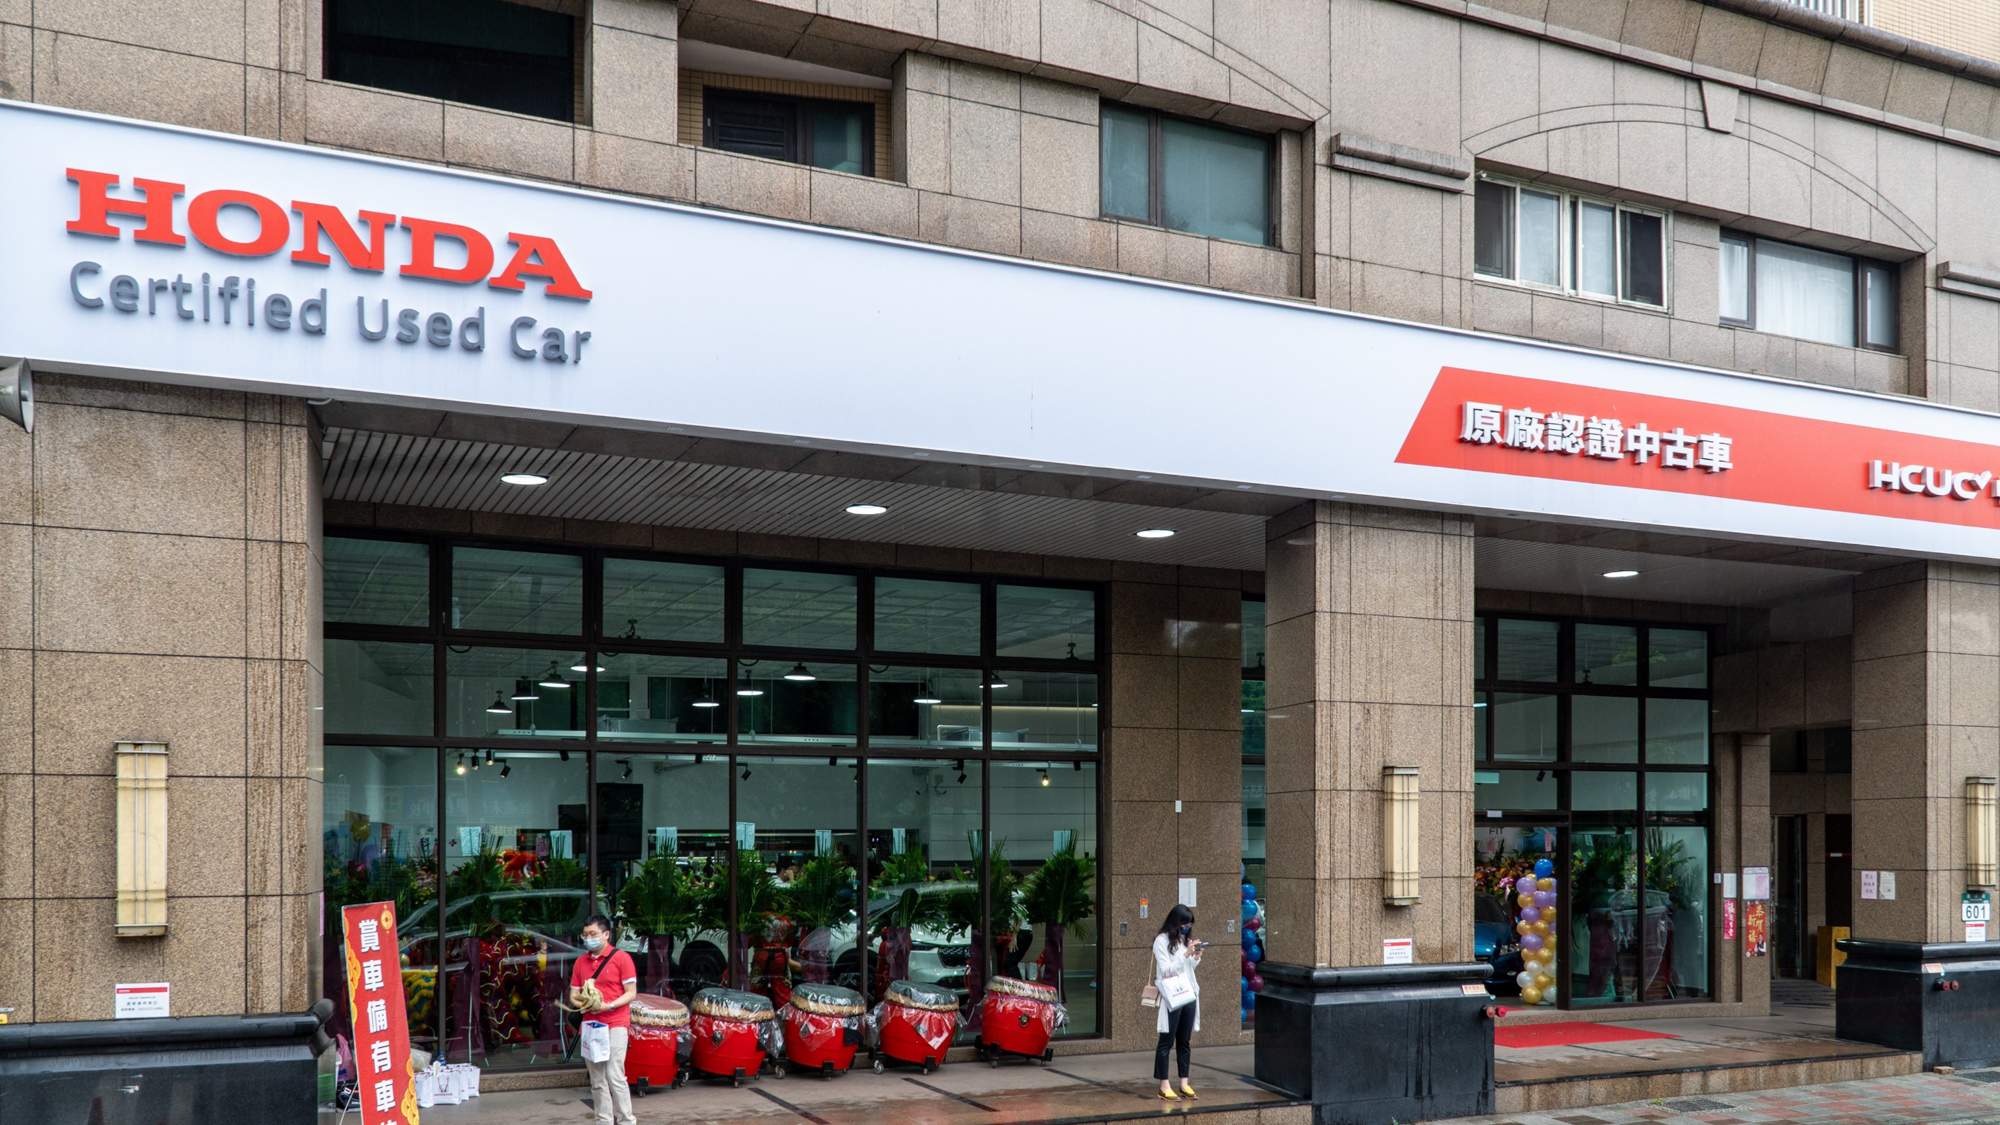 ▲ Honda Certified Used Car 新北市首家據點開幕